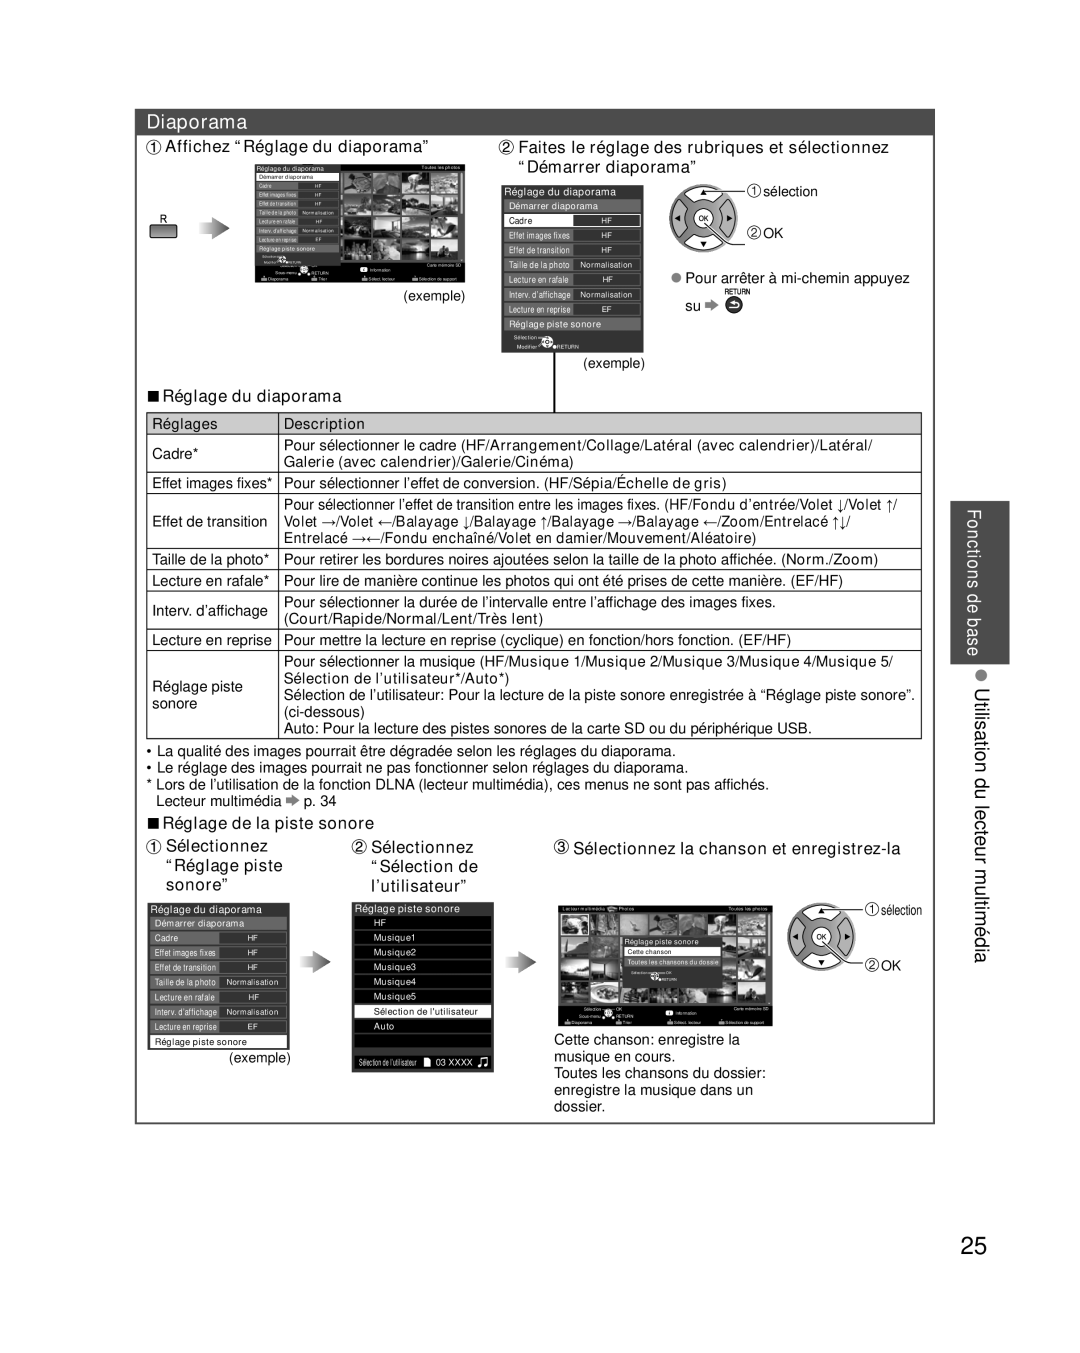 Panasonic TC-L42E30 Diaporama, Affichez “Réglage du diaporama”, Faites le réglage des rubriques et sélectionnez, sonore” 